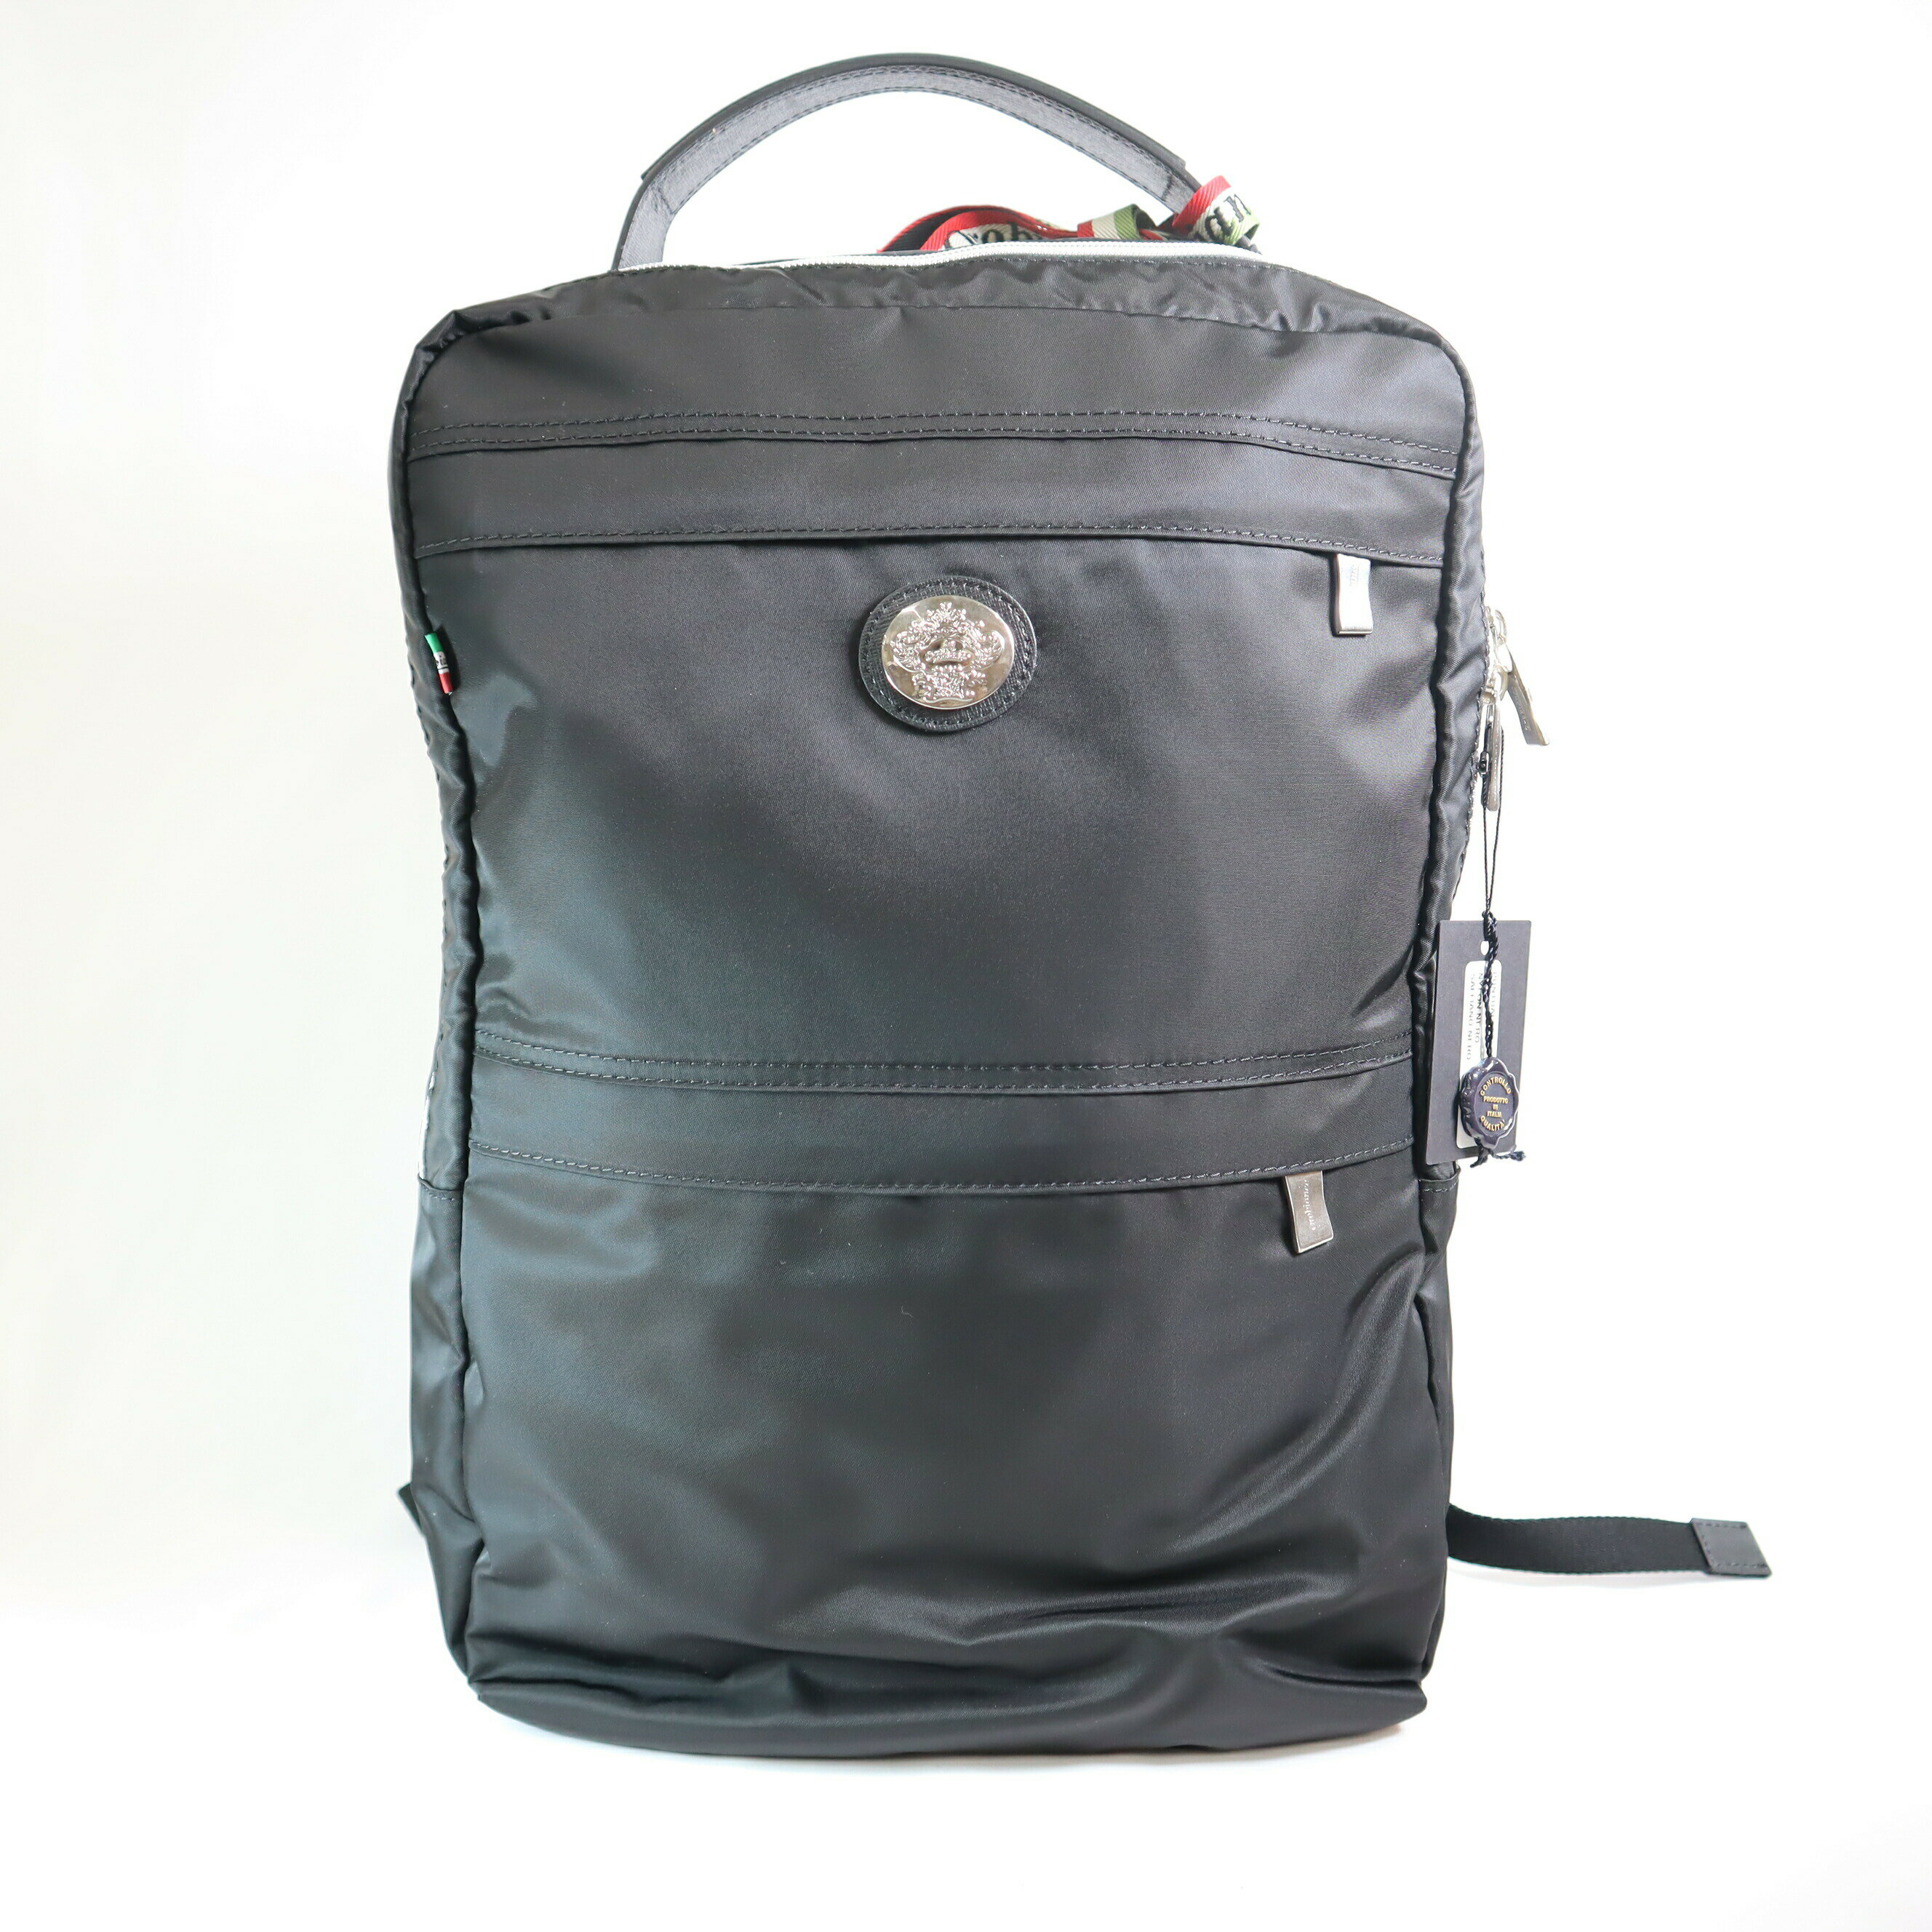 オロビアンコ リュック メンズ オロビアンコ リュック ブラック OROBIANCO 鞄 PUNTUALE-C 01 BLACK NYLON メンズ シンプル